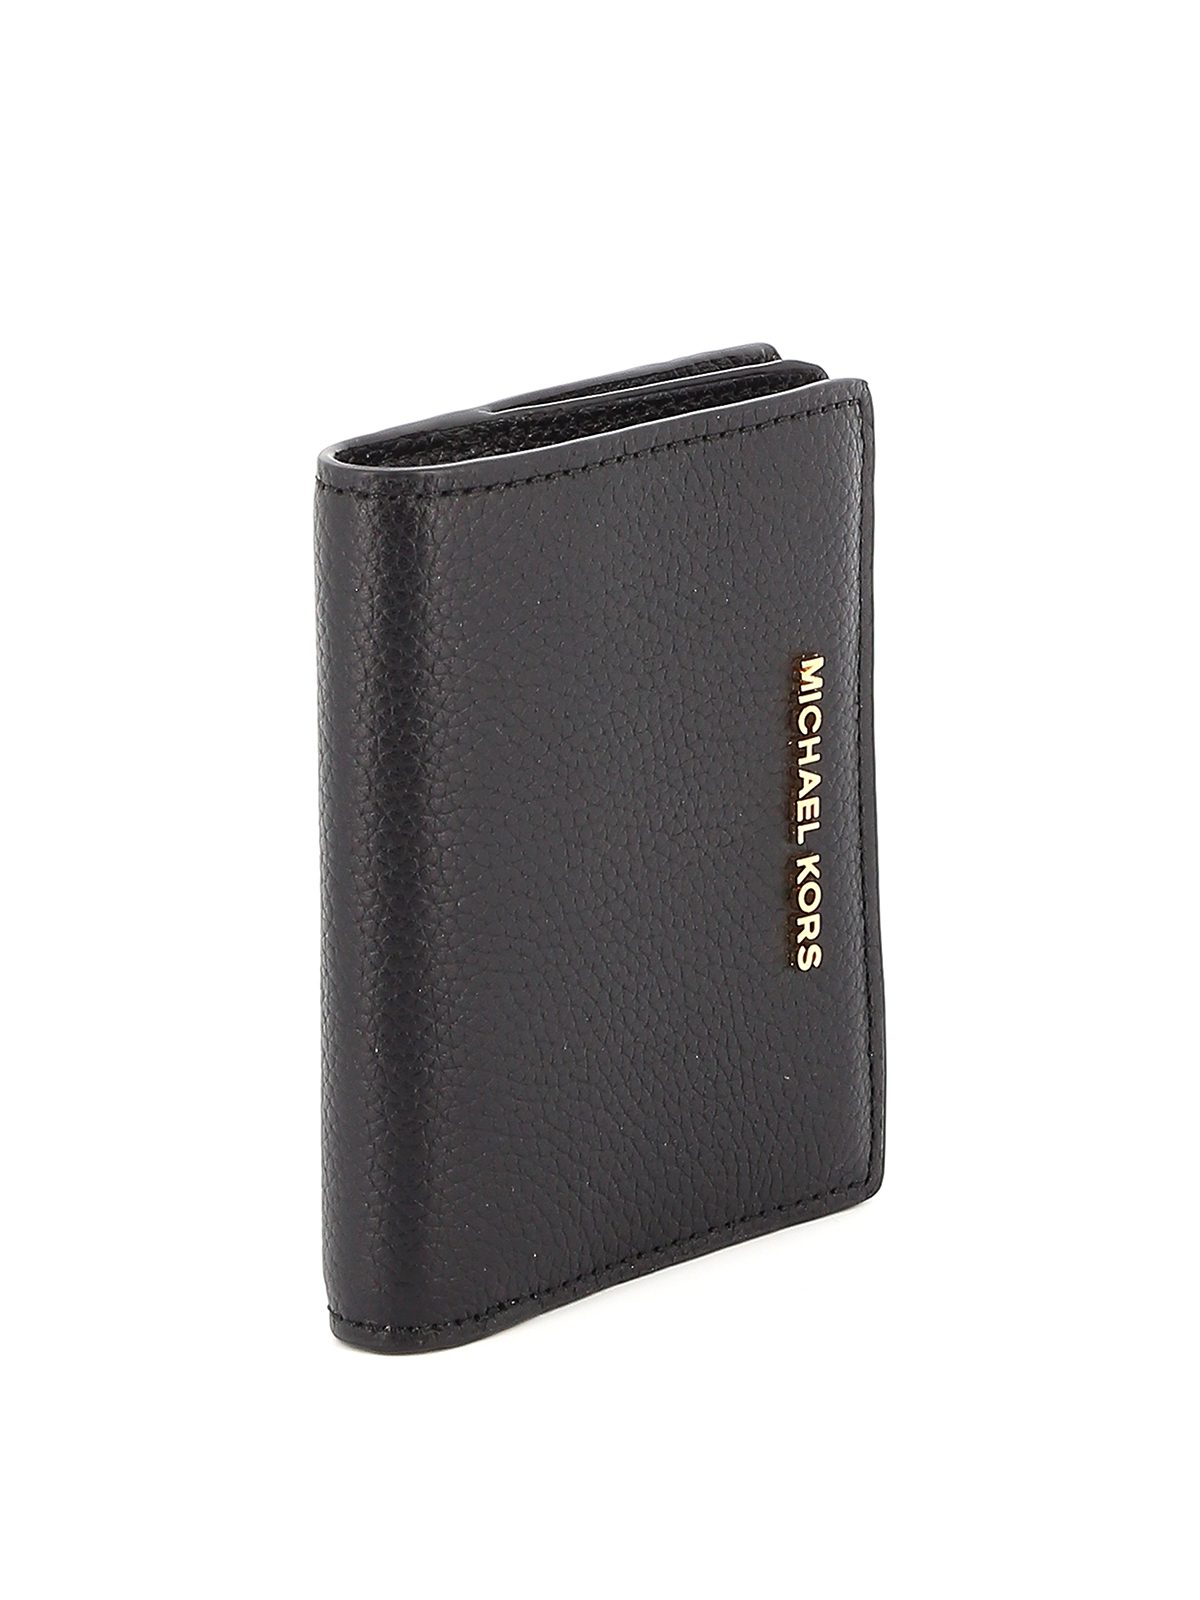 Wallets & purses Michael Kors - Jet Set black bifold wallet - 34F9GJ6F2L001